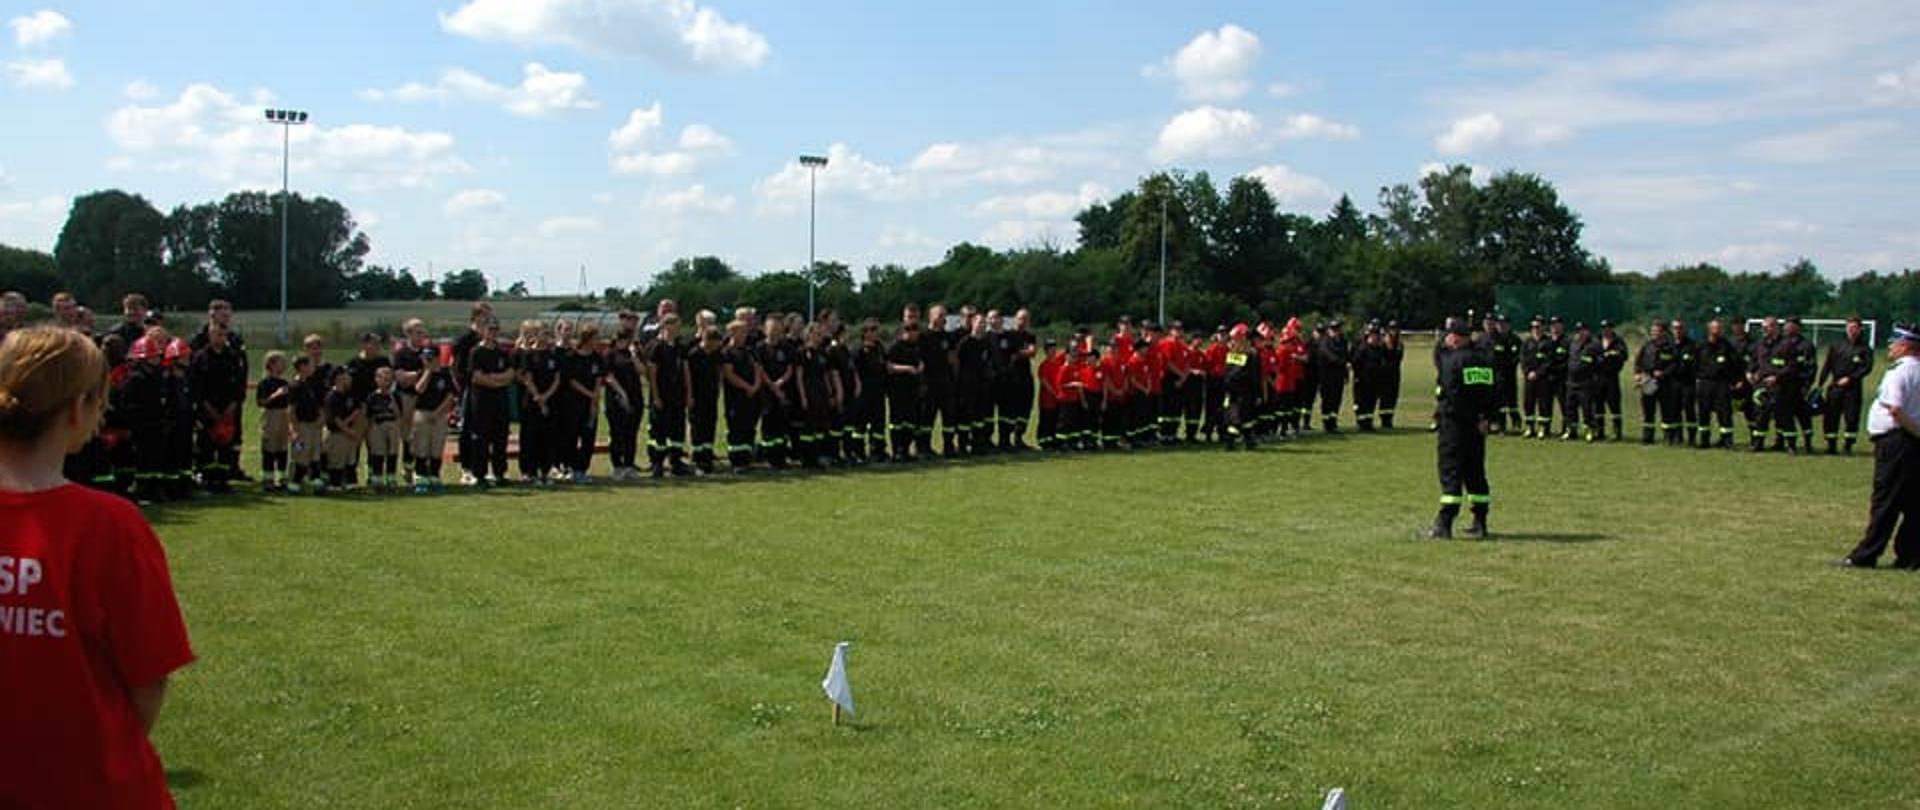 Na zdjęciu wspólne zdjęcie wszystkich drużyn biorących udział w zawodach
